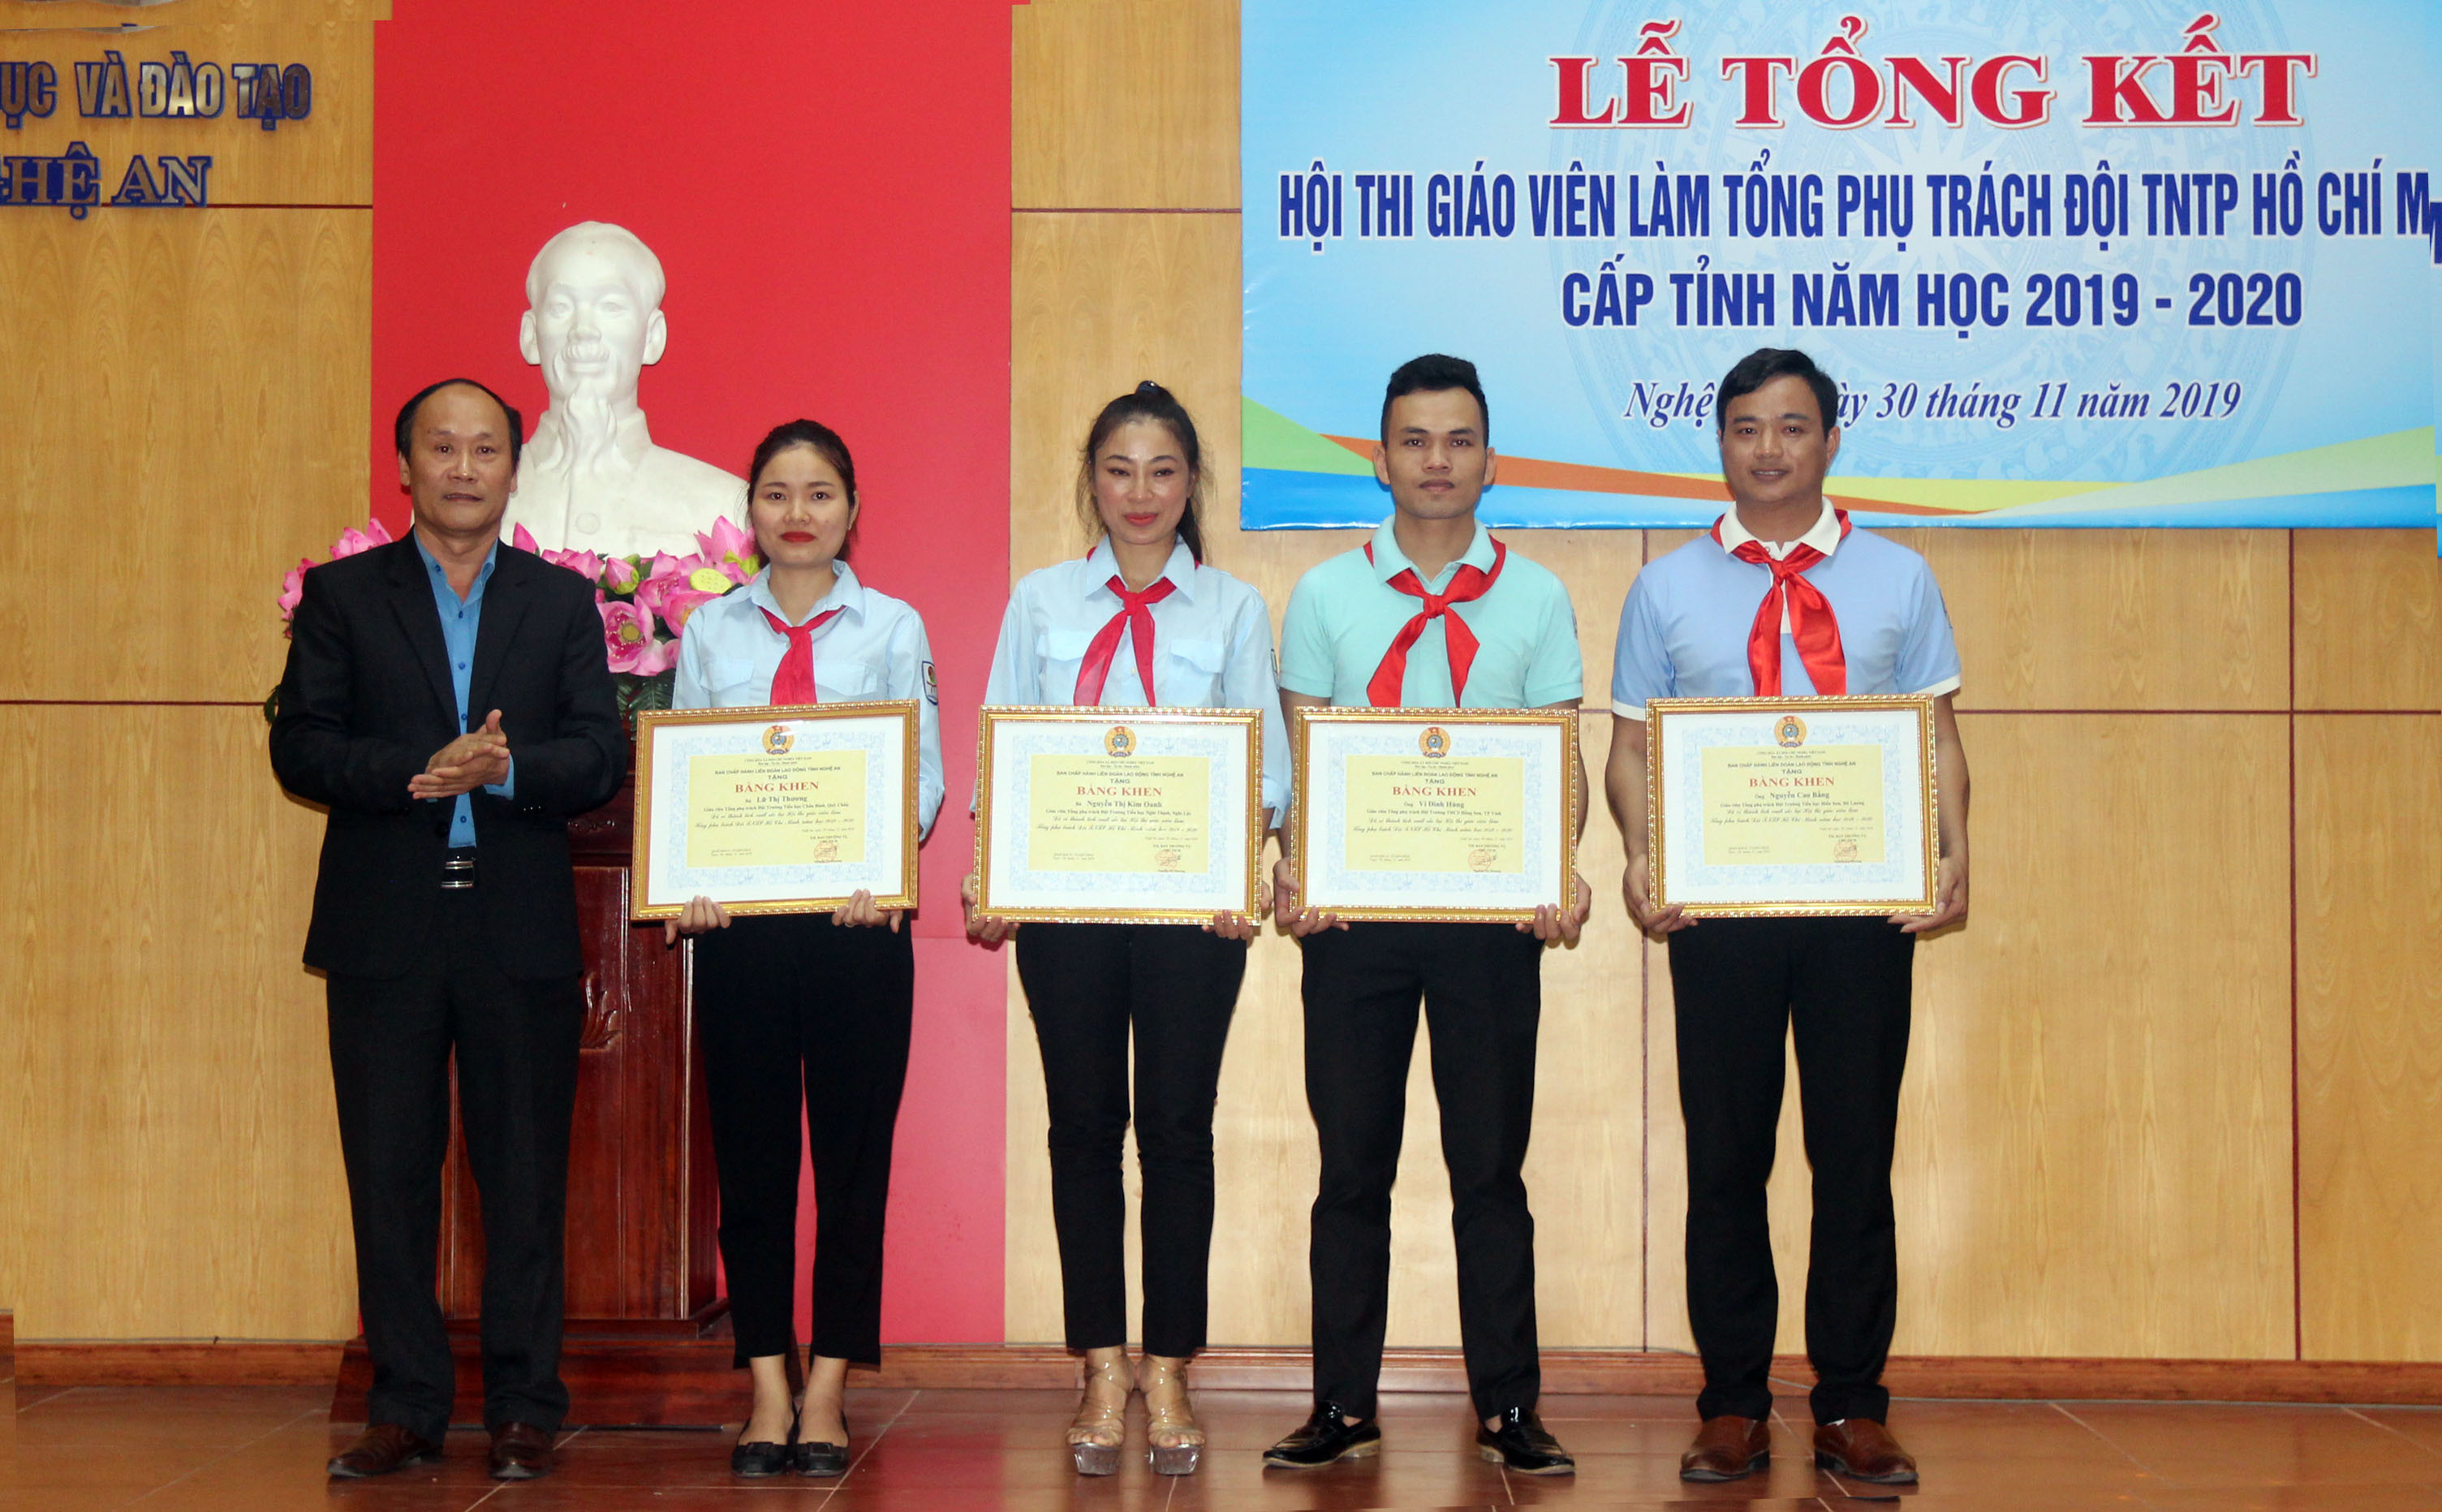 Chủ tịch Liên đoàn Lao động Nguyễn Tử Phương Bằng khen cho 4 thí sinh xuất sắc nhất hội thi. Ảnh: Mỹ Hà